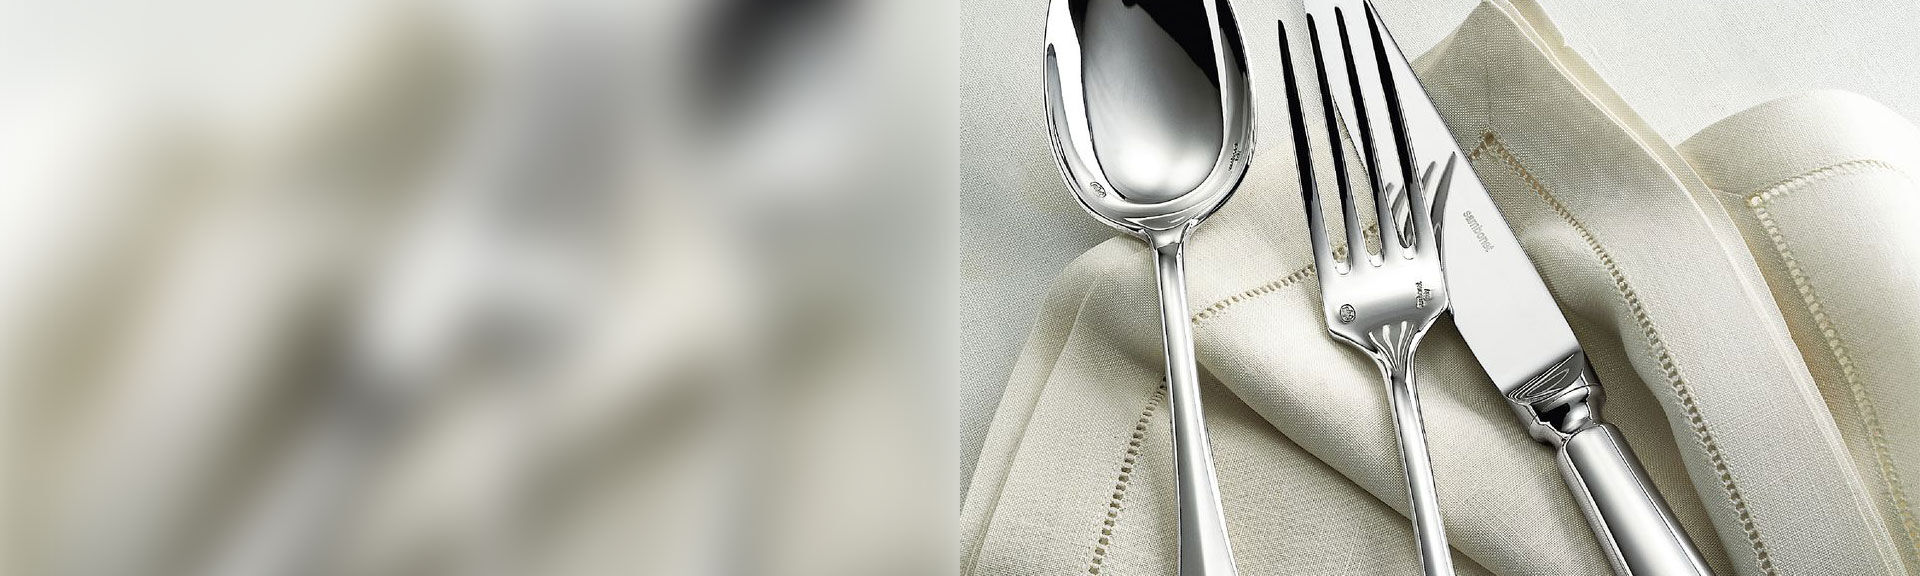 Nickel silver cutlery